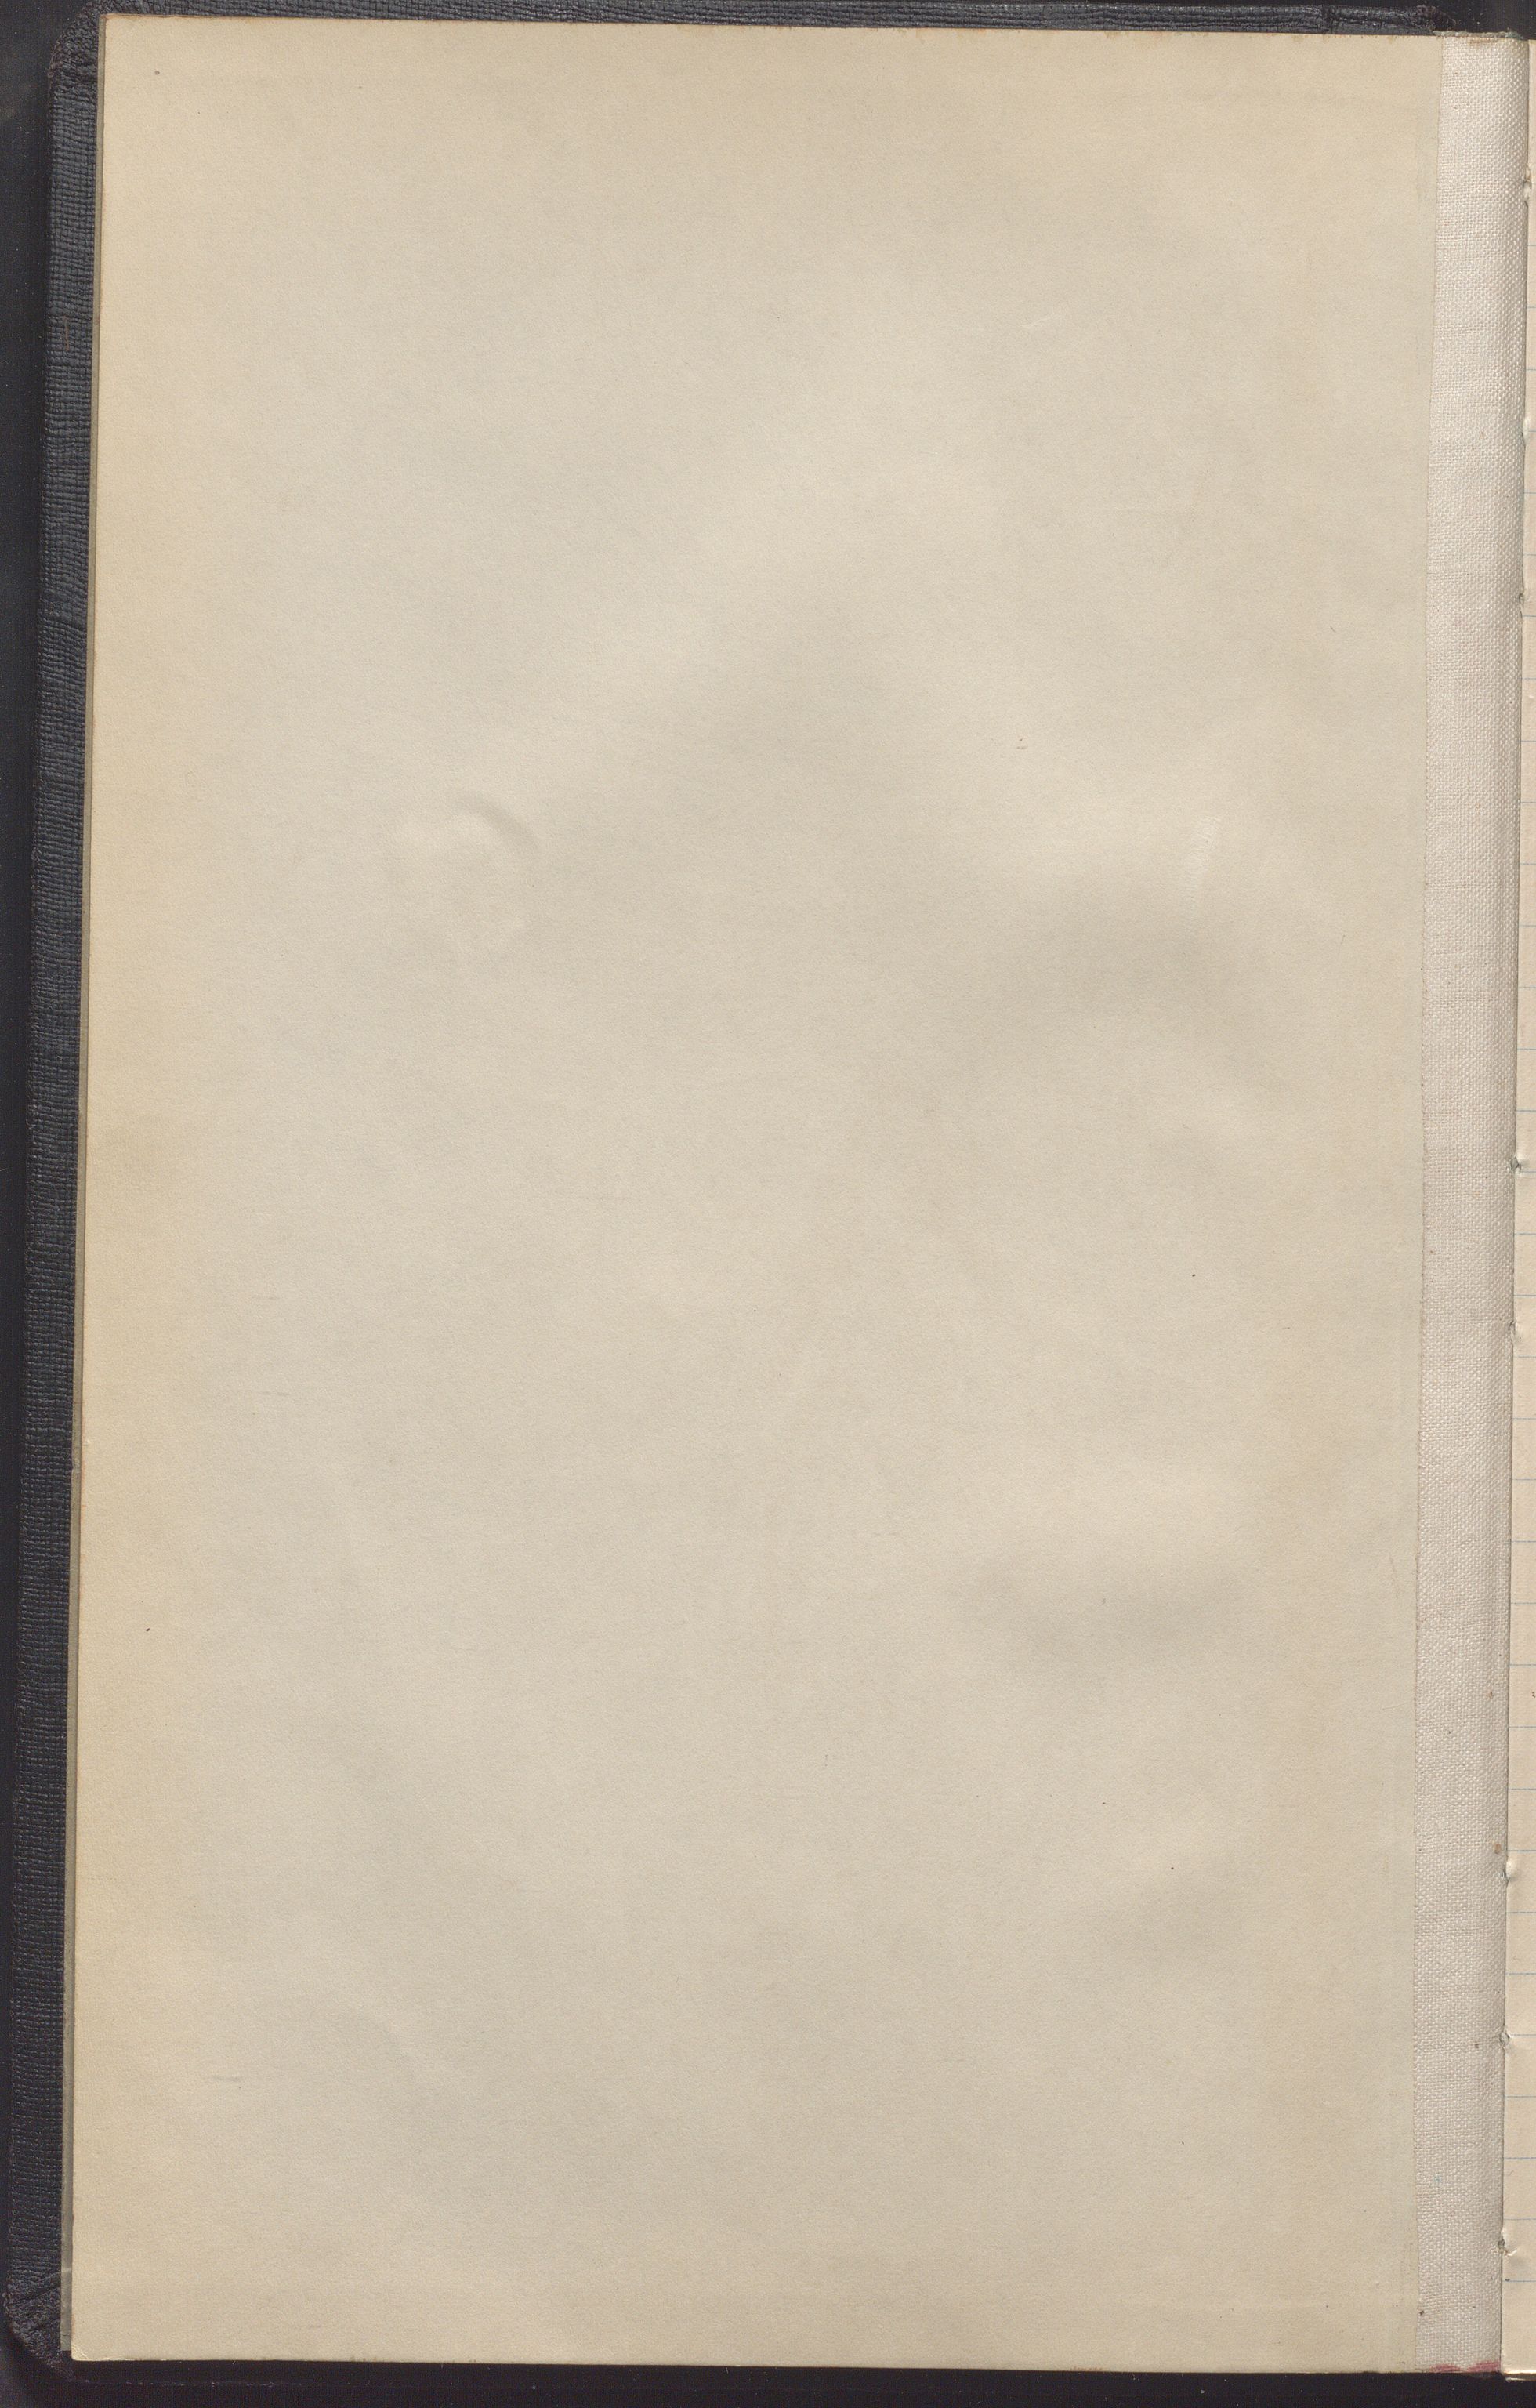 Haugesund kommune - Formannskapet, IKAR/X-0001/A/L0002: Transkribert møtebok, 1855-1874